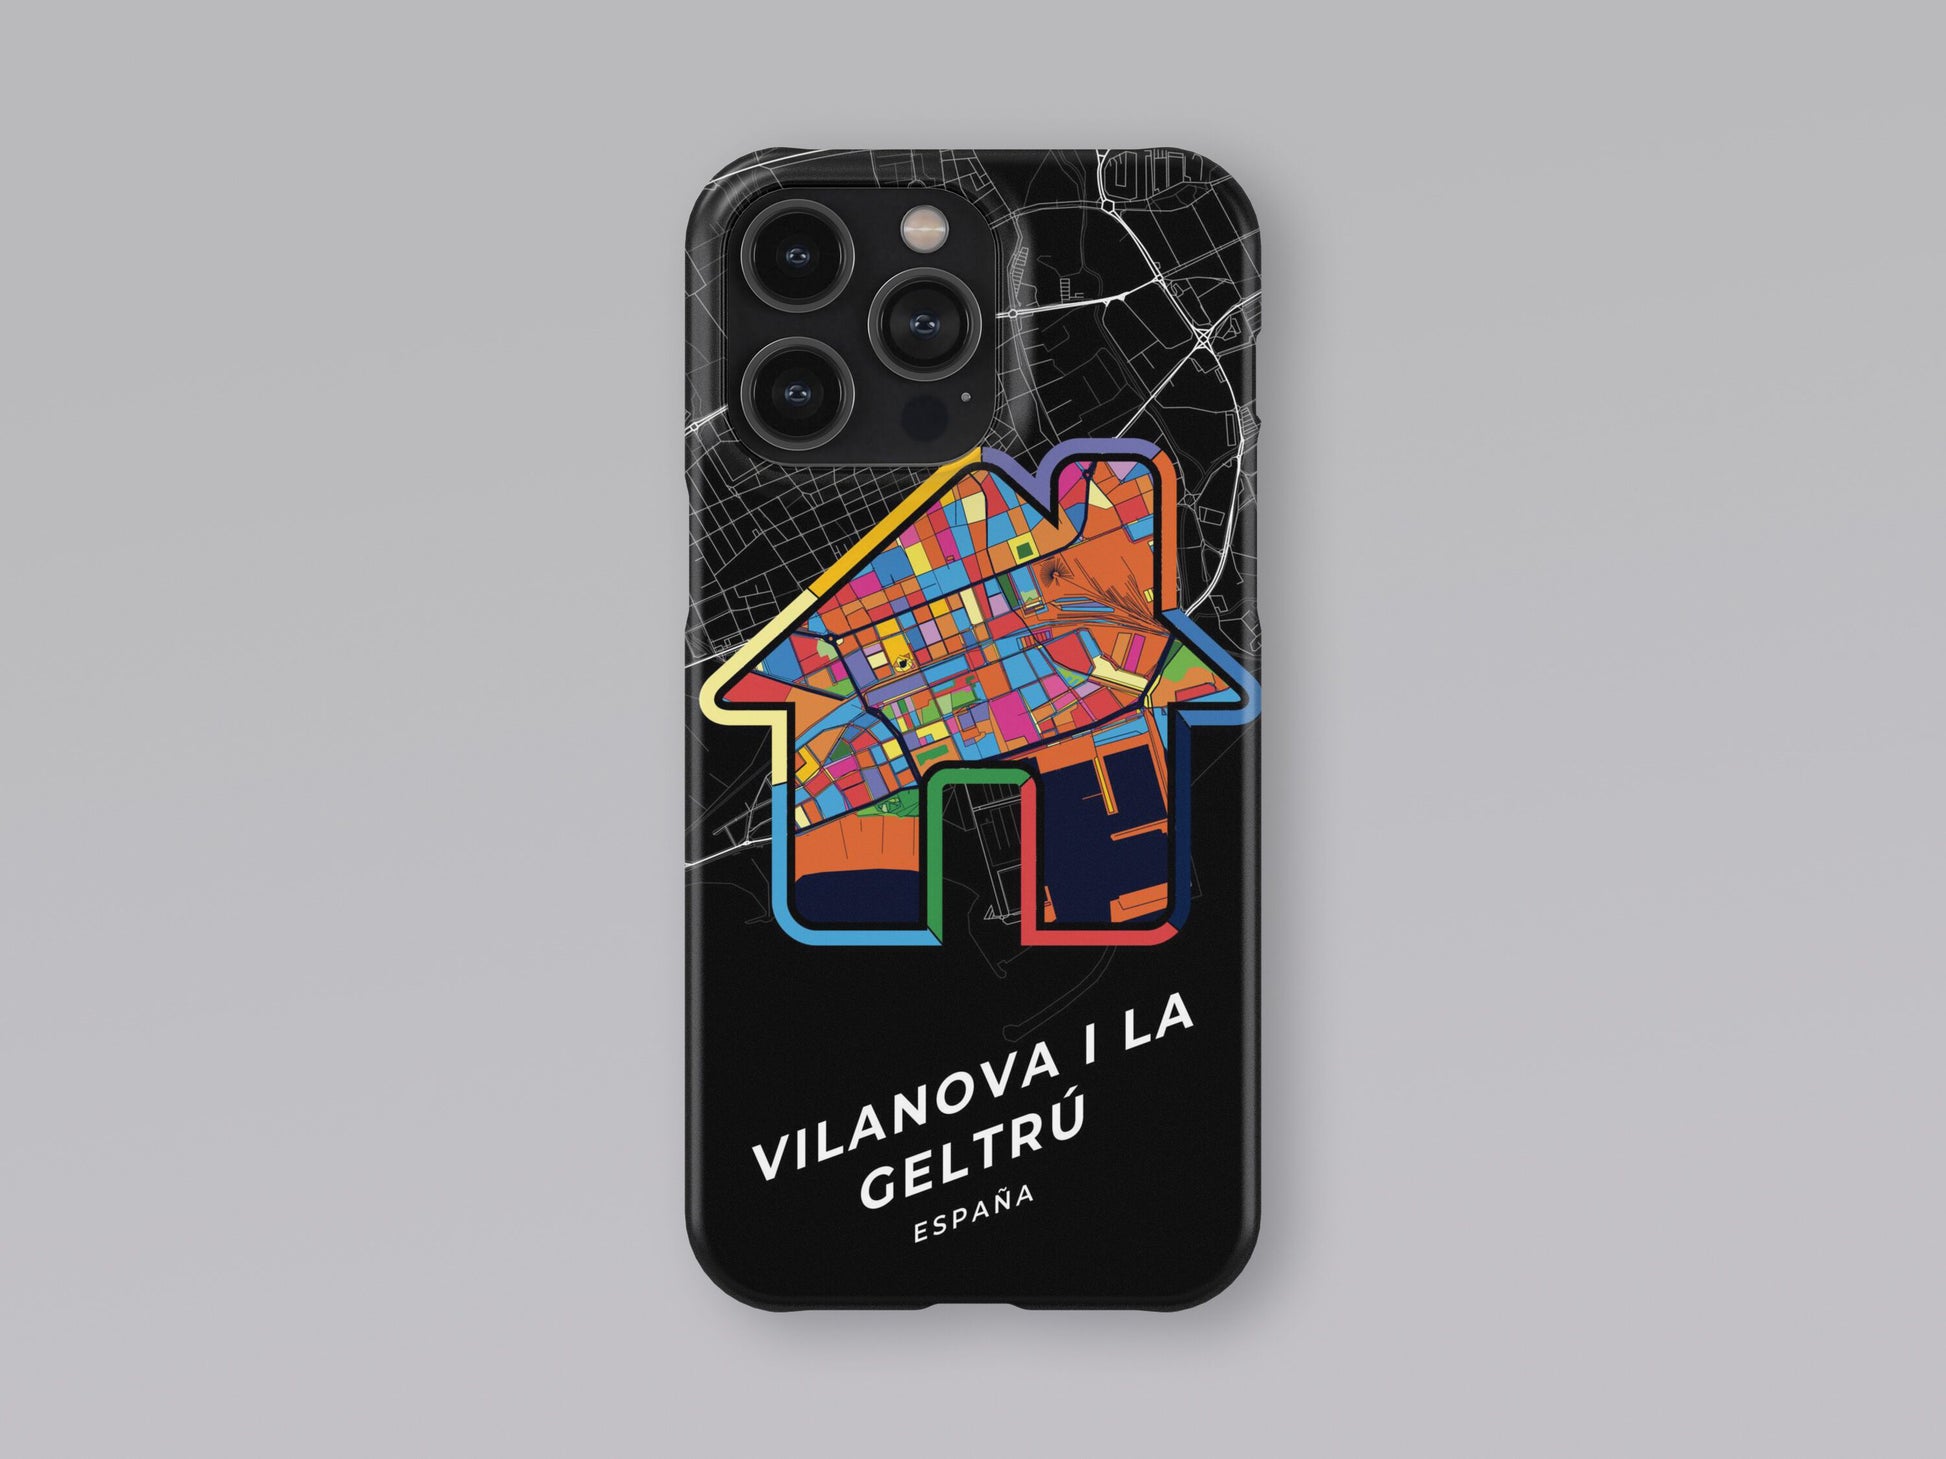 Vilanova I La Geltrú Spain slim phone case with colorful icon 3